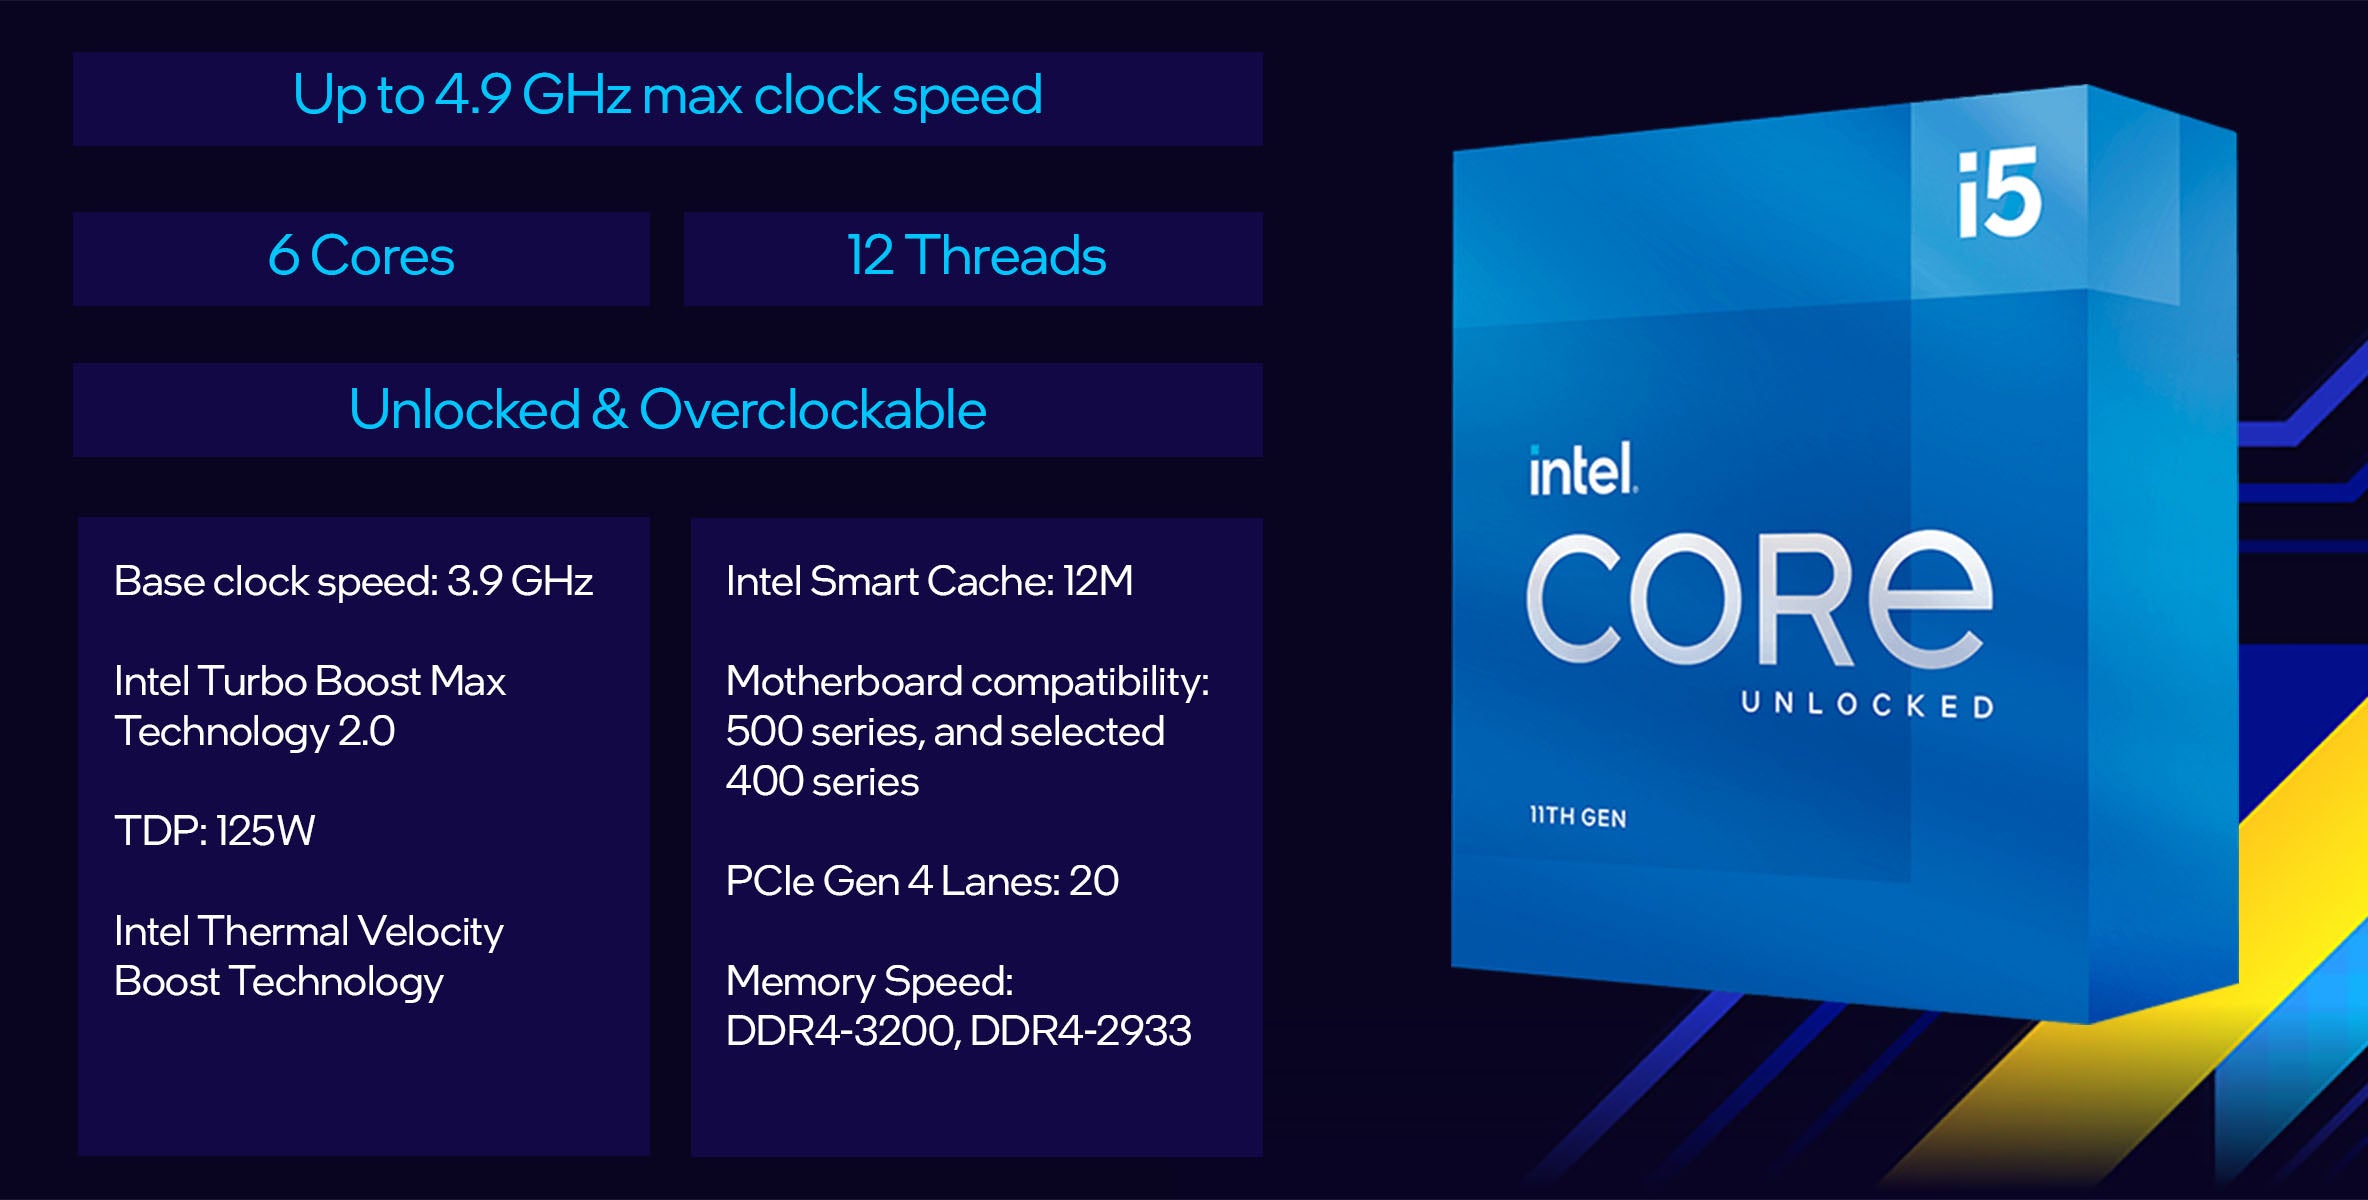 Intel 11th Gen i5-11600K Desktop Processor-From tpstech.in